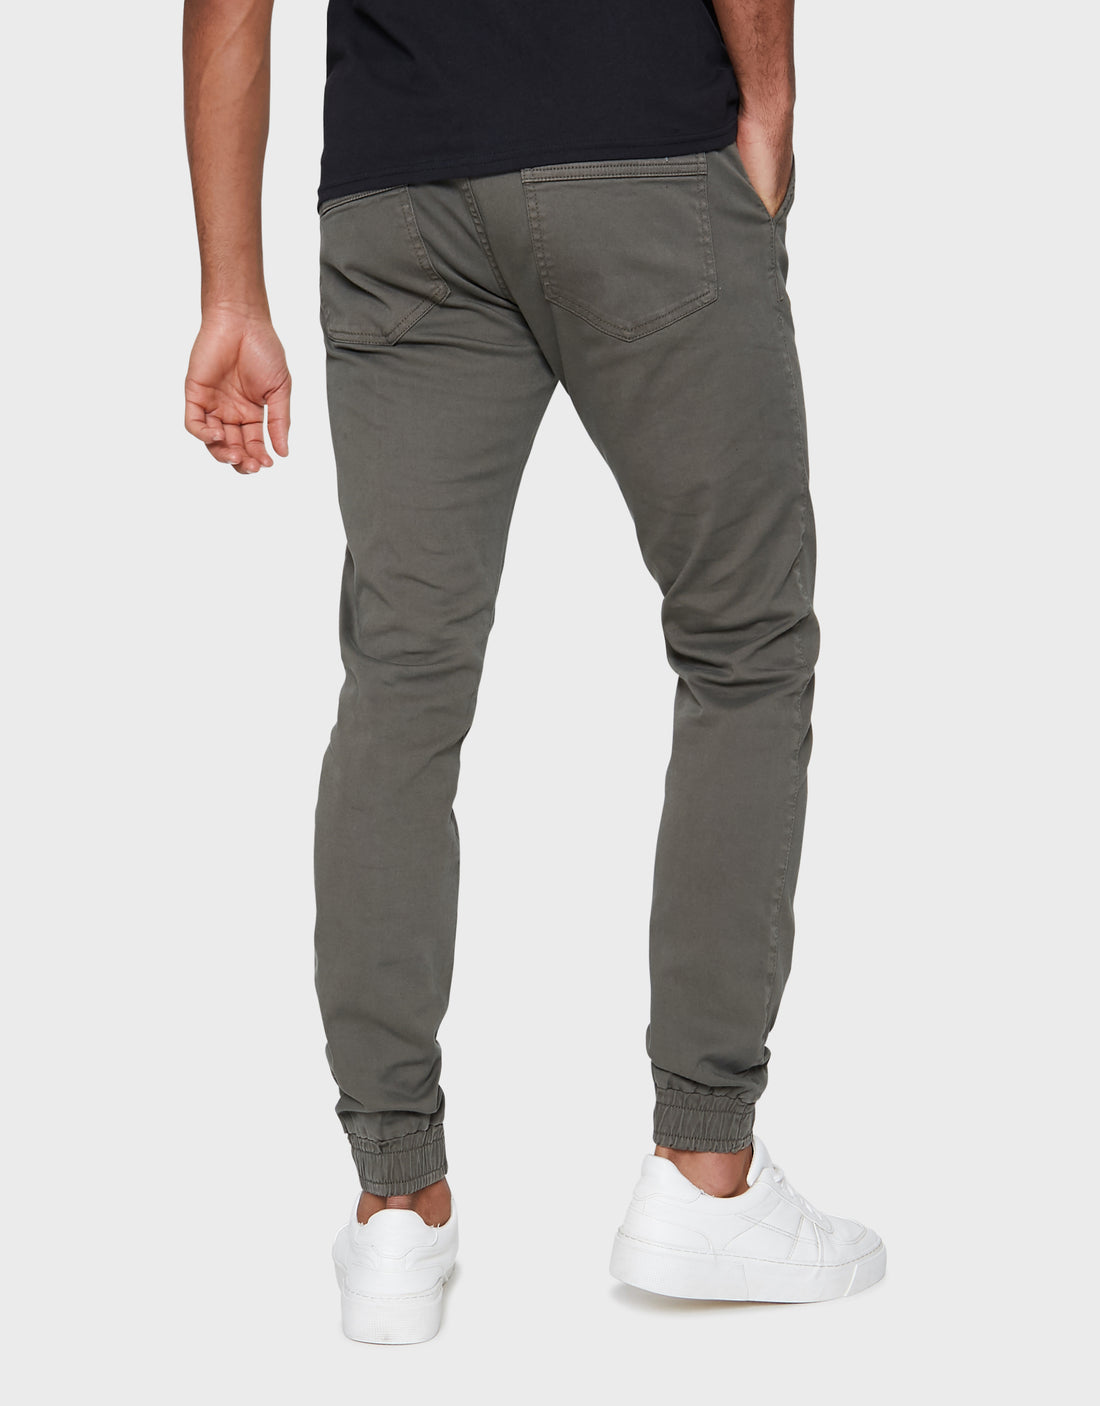 Men's Khaki Green Cuffed Slim Fit Trousers – Threadbare